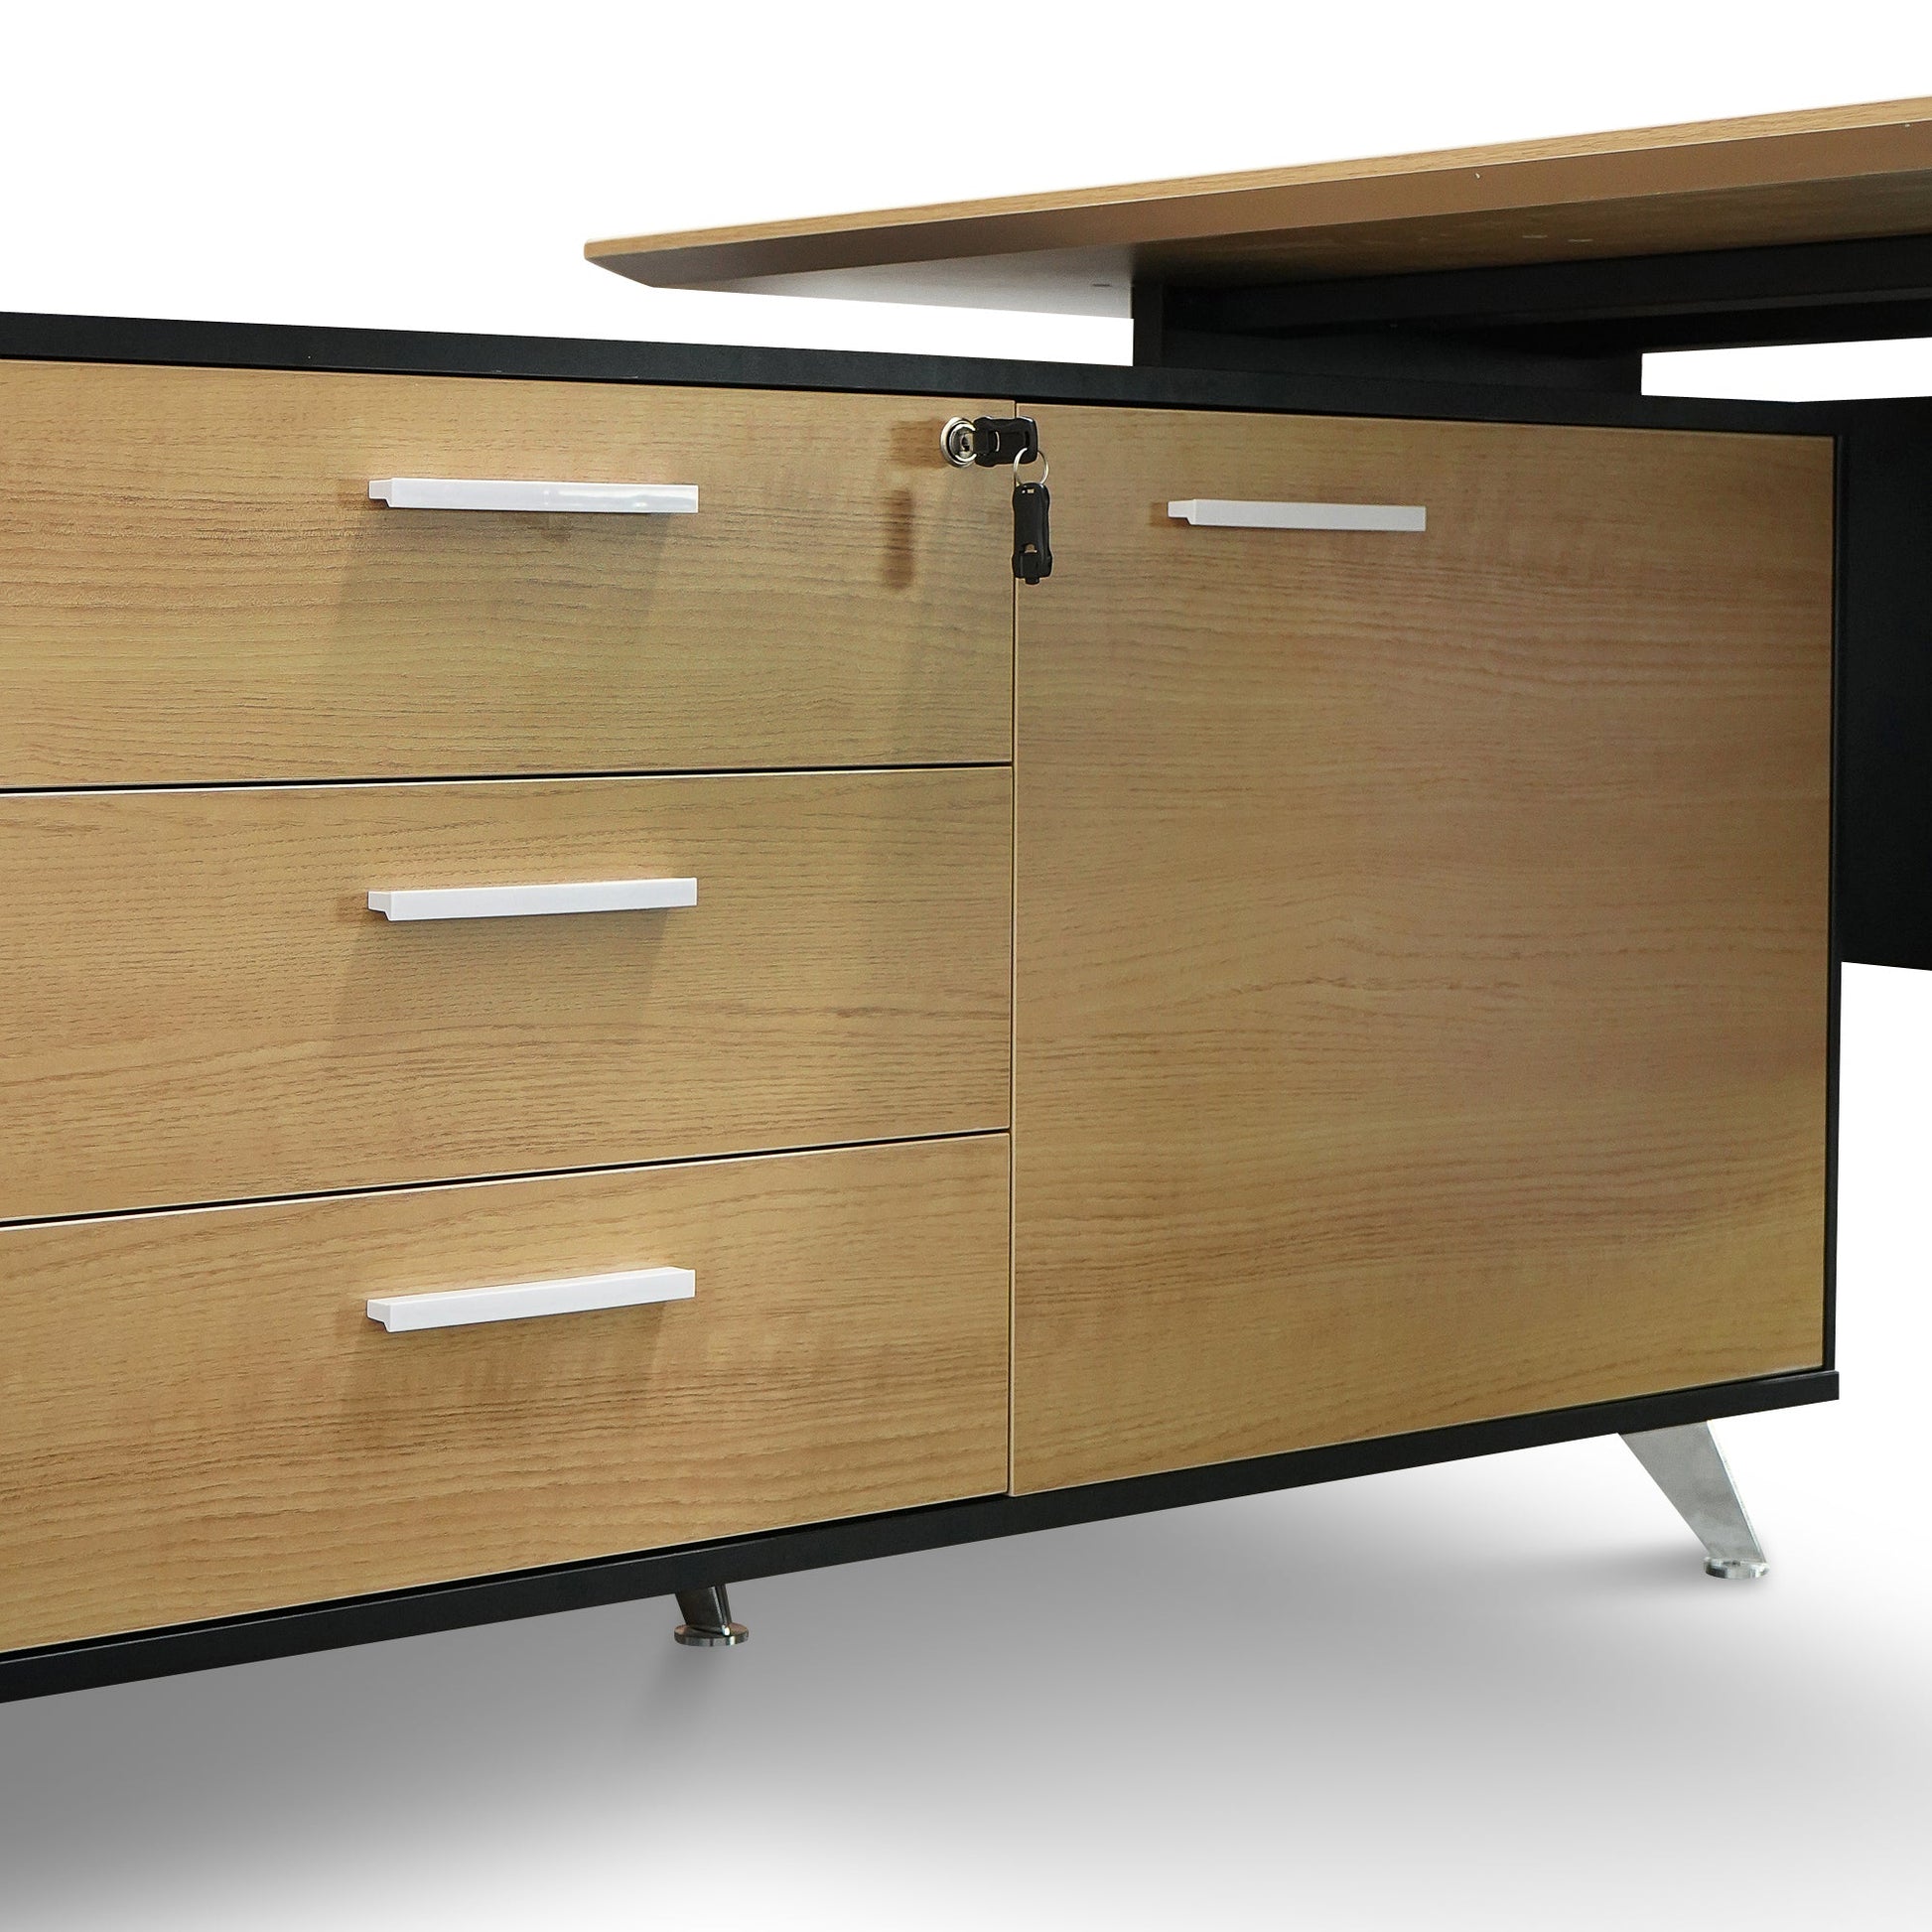 1.95m Executive Desk Left Return - Black Frame with Natural Top and Drawers-Office Desks-Calibre-Prime Furniture